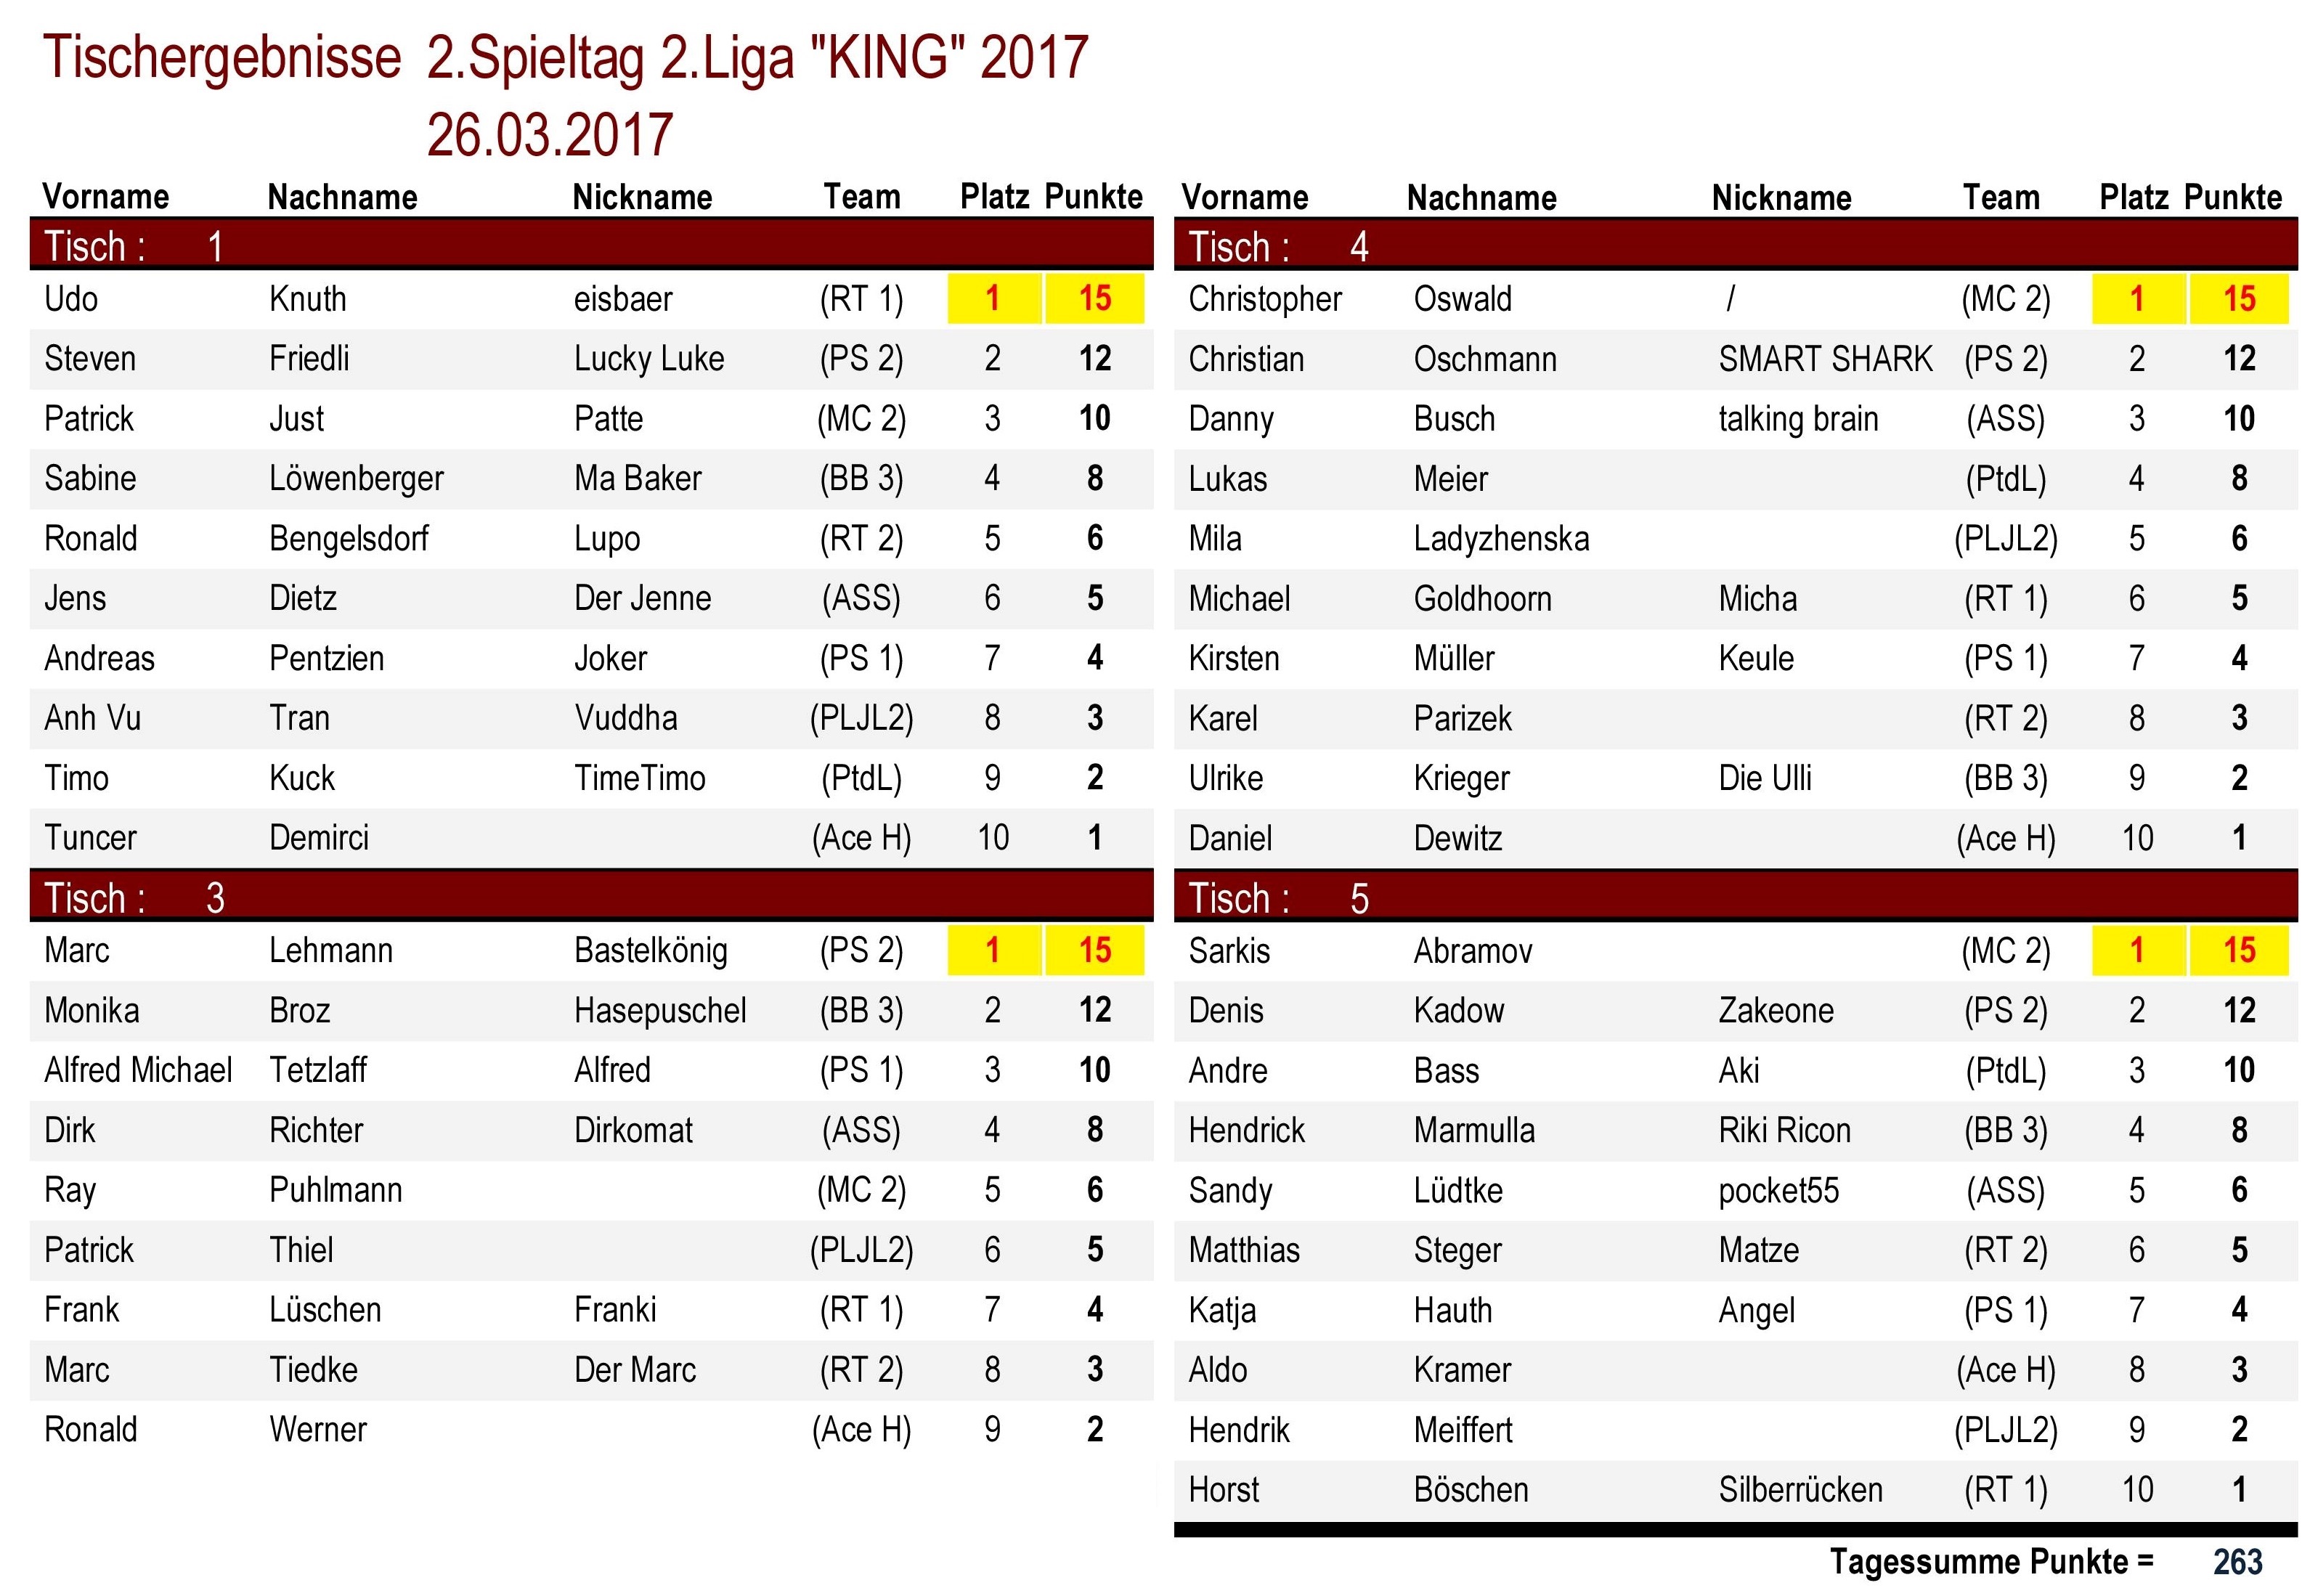 Tischergebnisse 2.Liga `KING` 2.Spieltag 2017